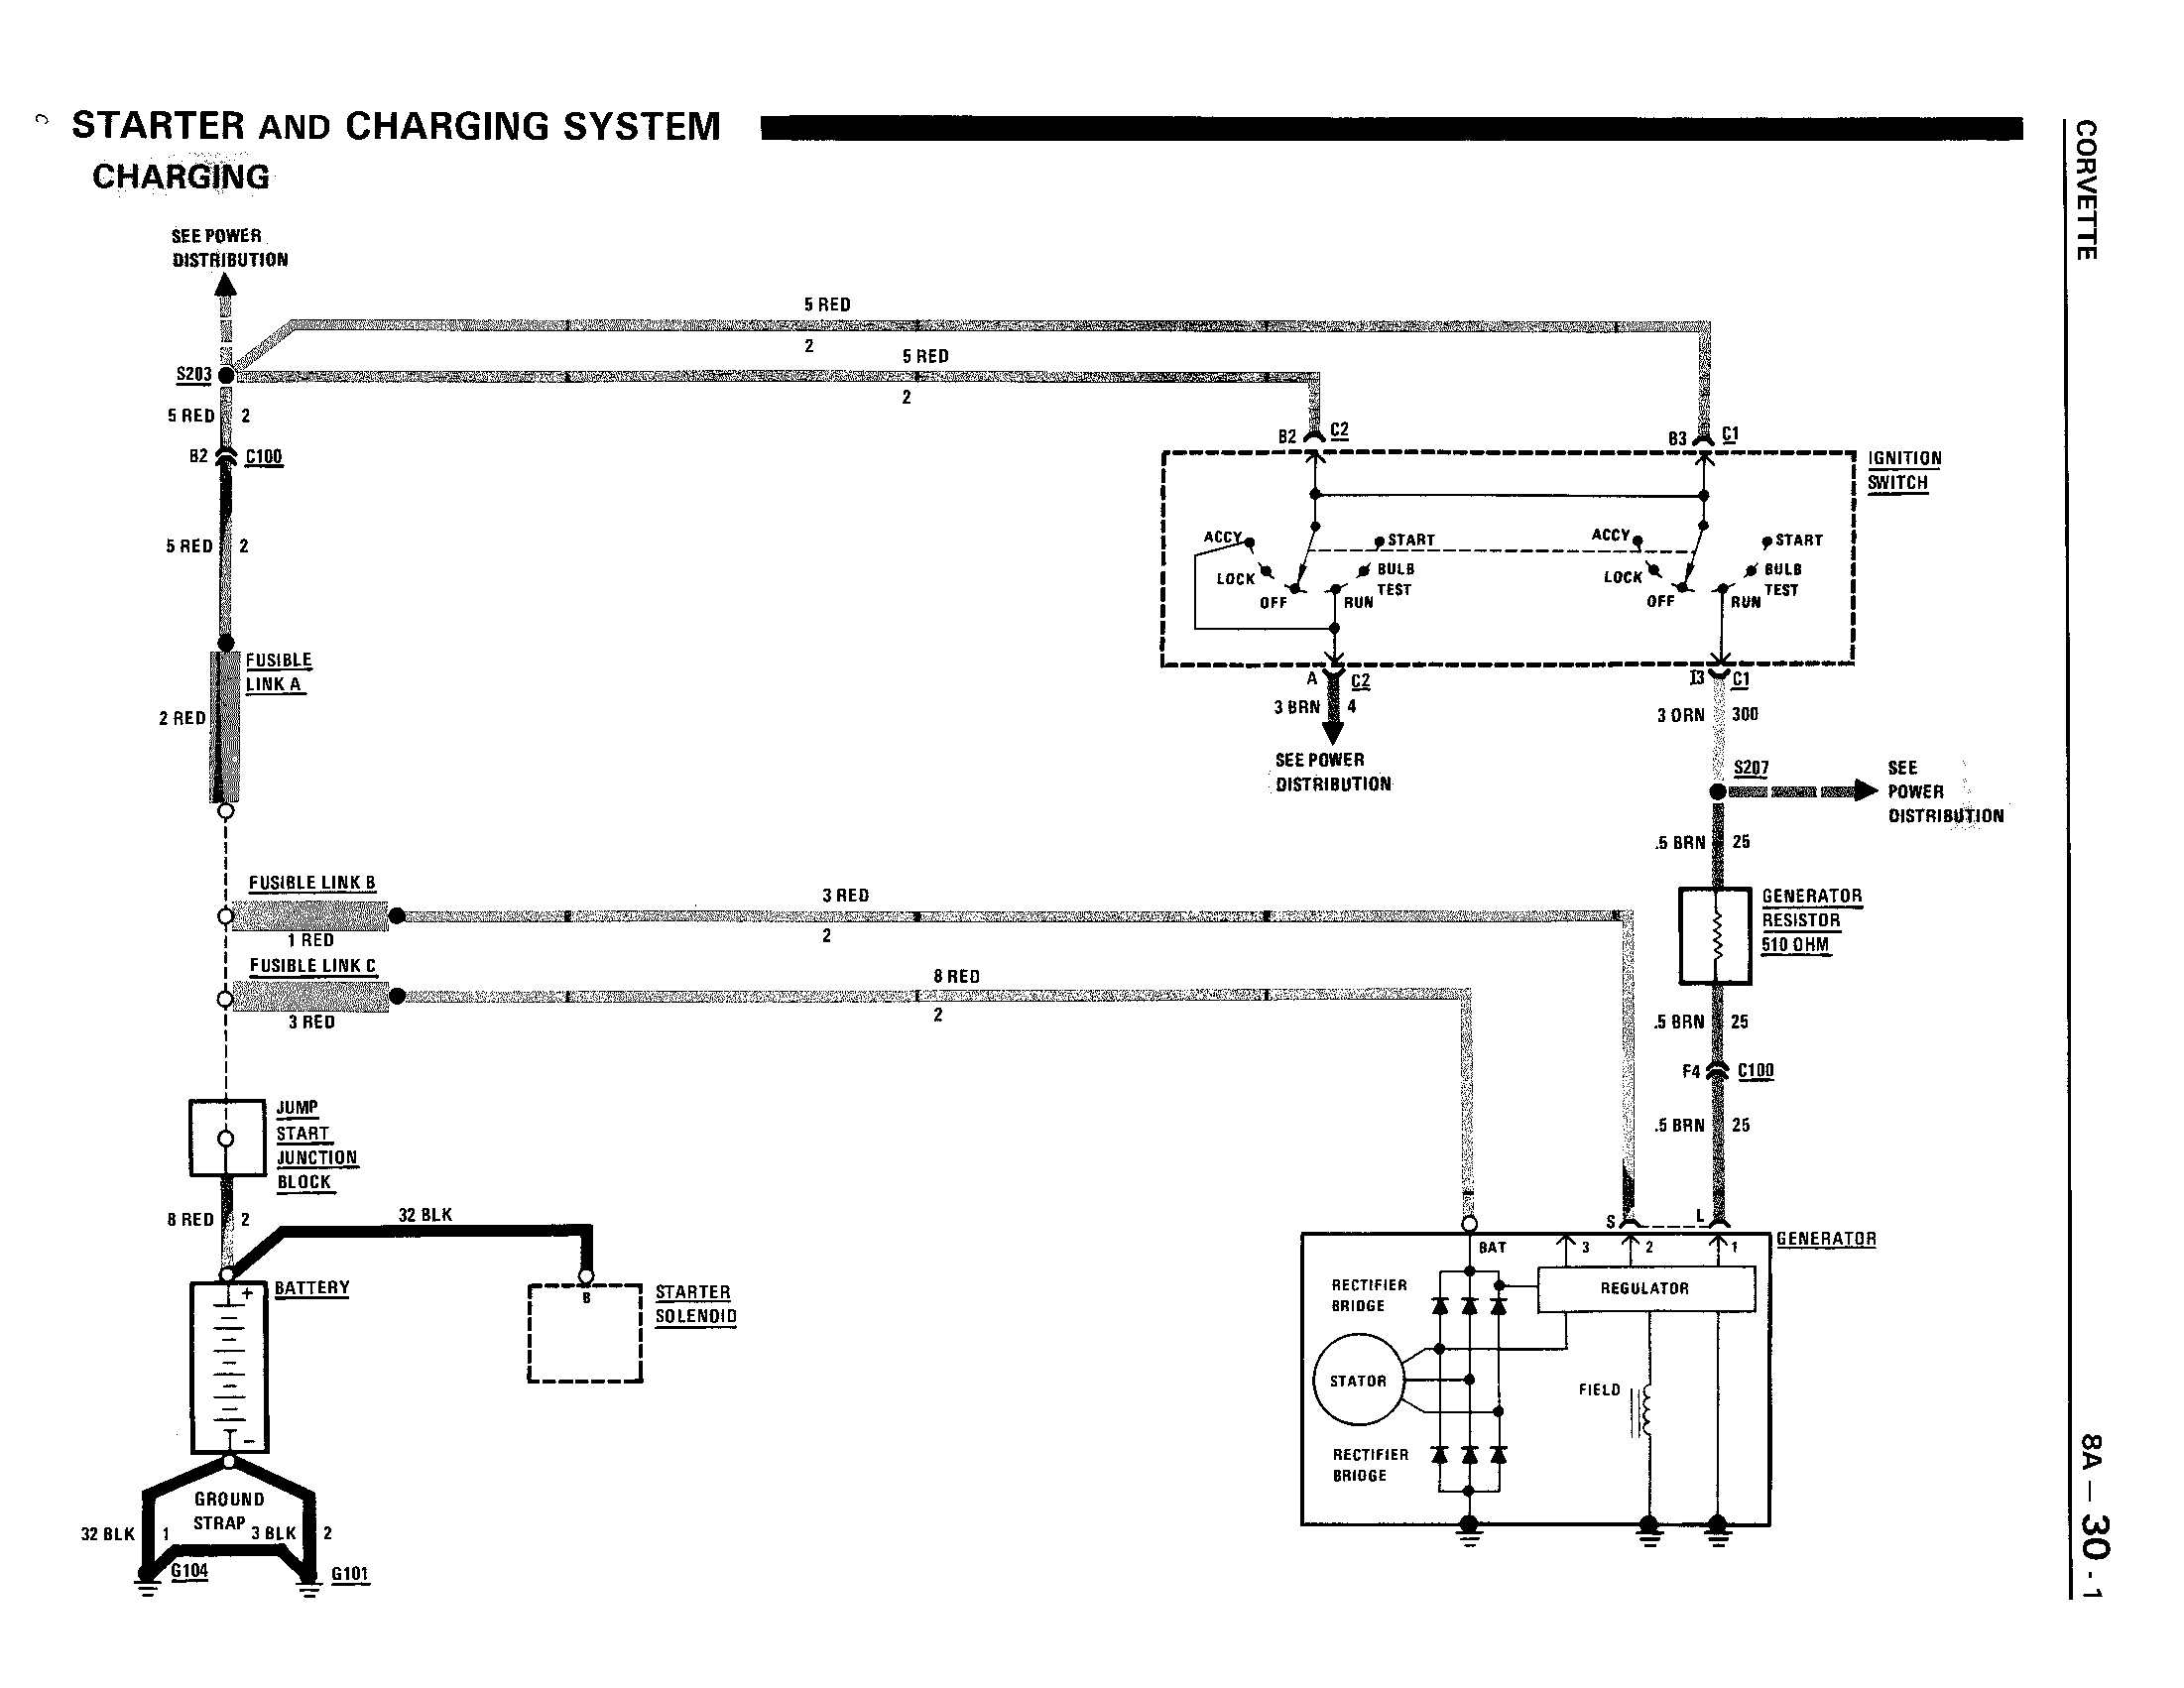 Alternator wiring diagram - CorvetteForum - Chevrolet Corvette Forum  Discussion  86 Chevy Alternator Wiring Diagram    Corvette Forum